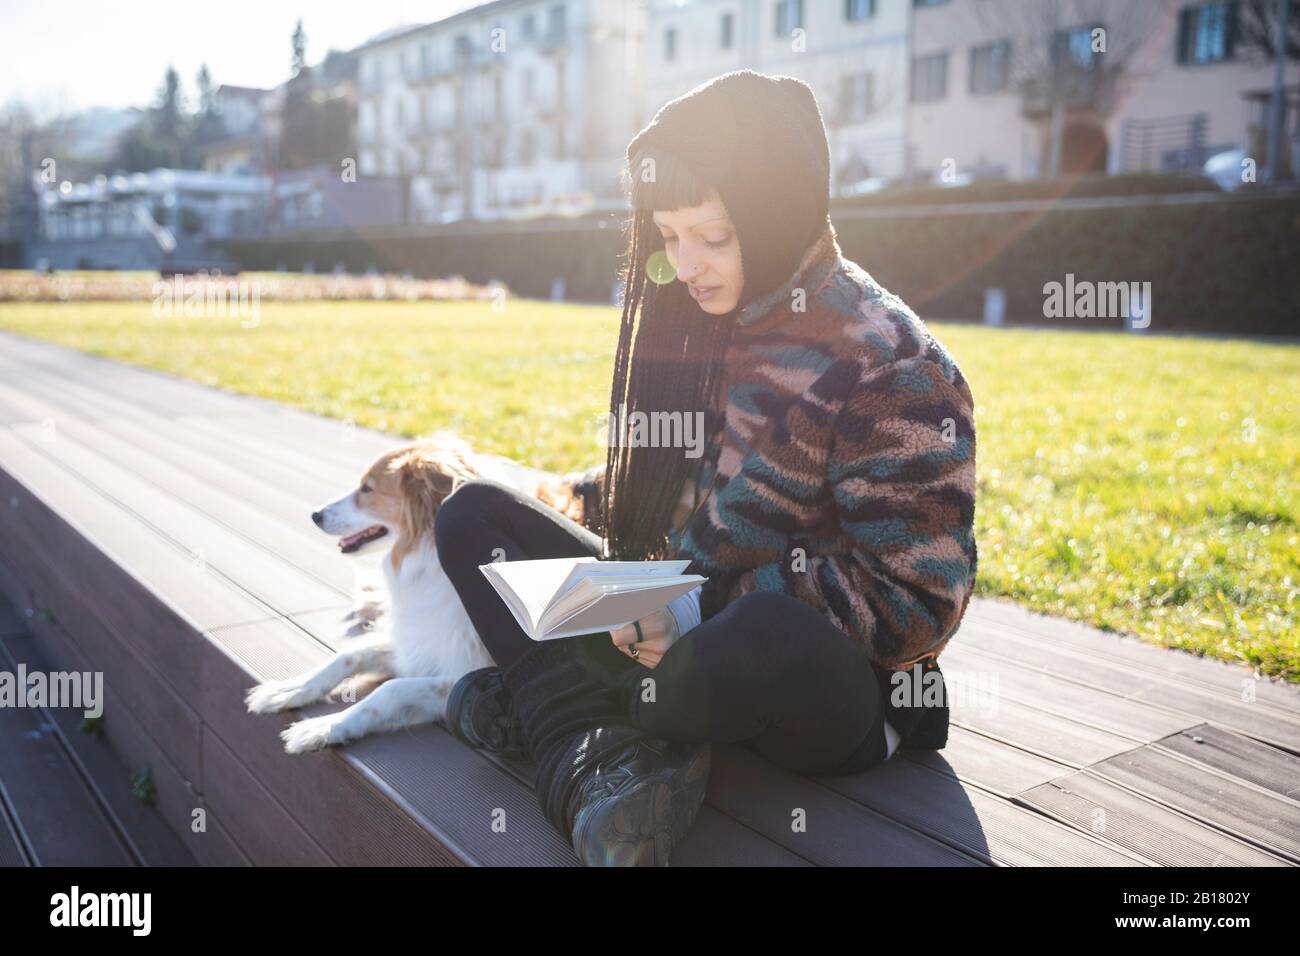 Mujer joven con perforaciones y trenzas sentada con su perro en un banco leyendo un libro, como, Italia Foto de stock